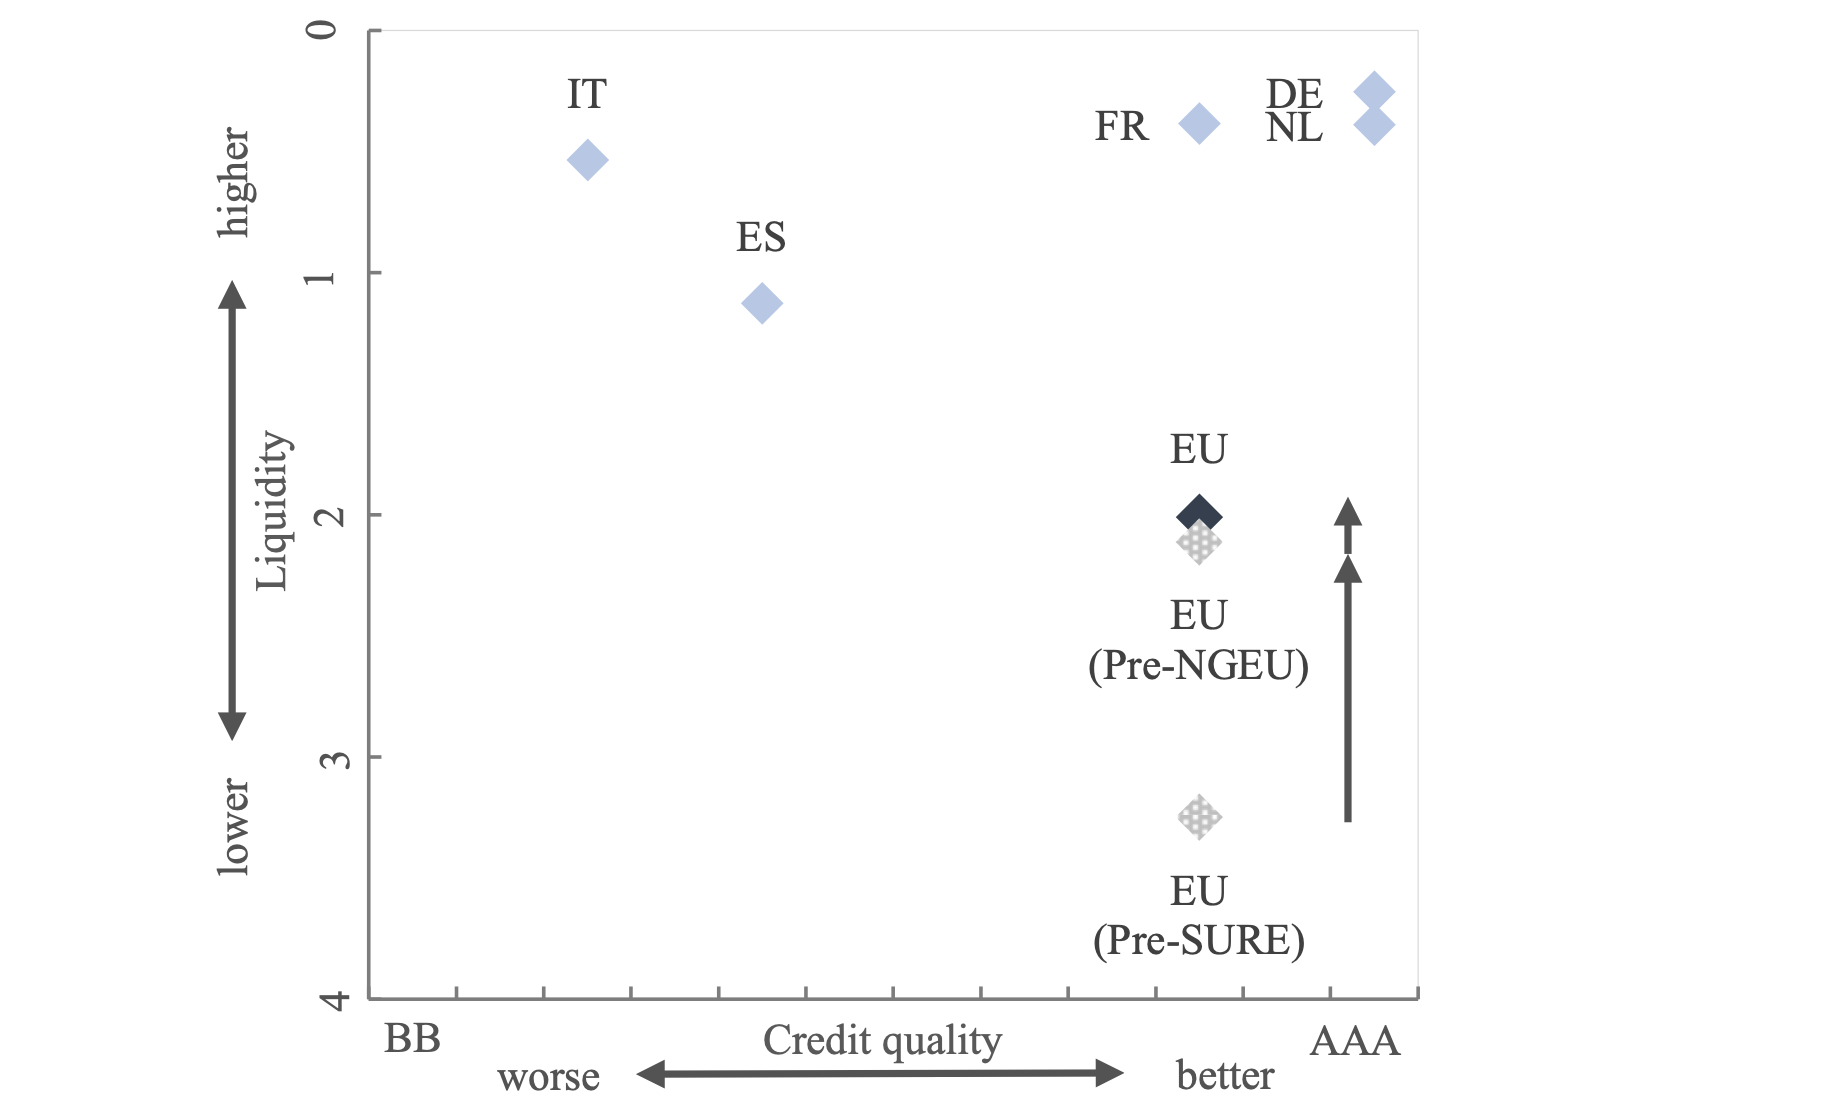 图1为欧盟债券信用风险和流动性指标